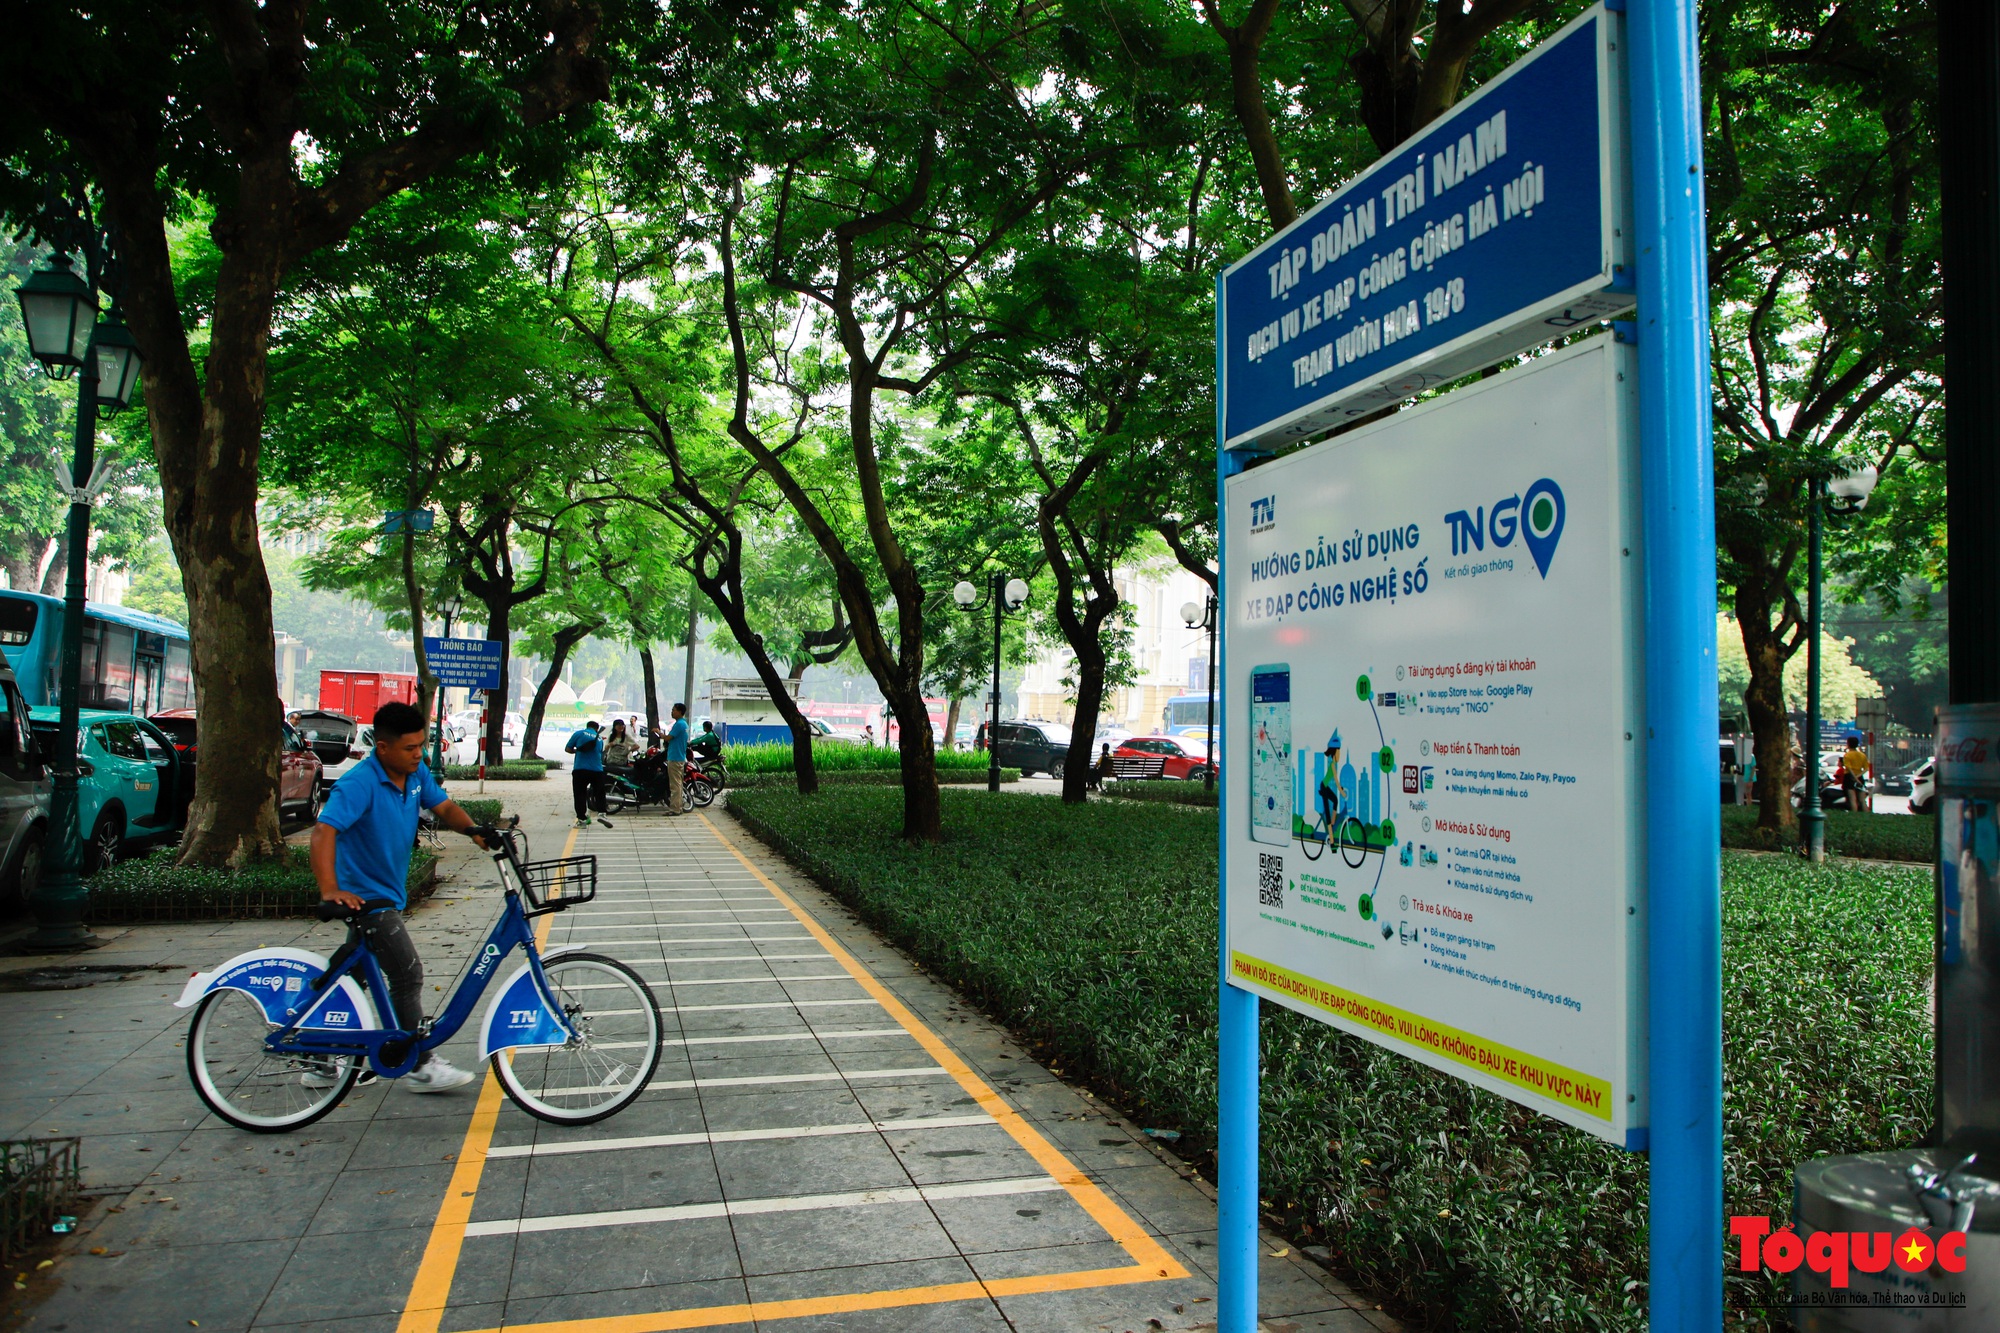 Hà Nội chính thức vận hành trạm xe đạp công cộng - Ảnh 1.